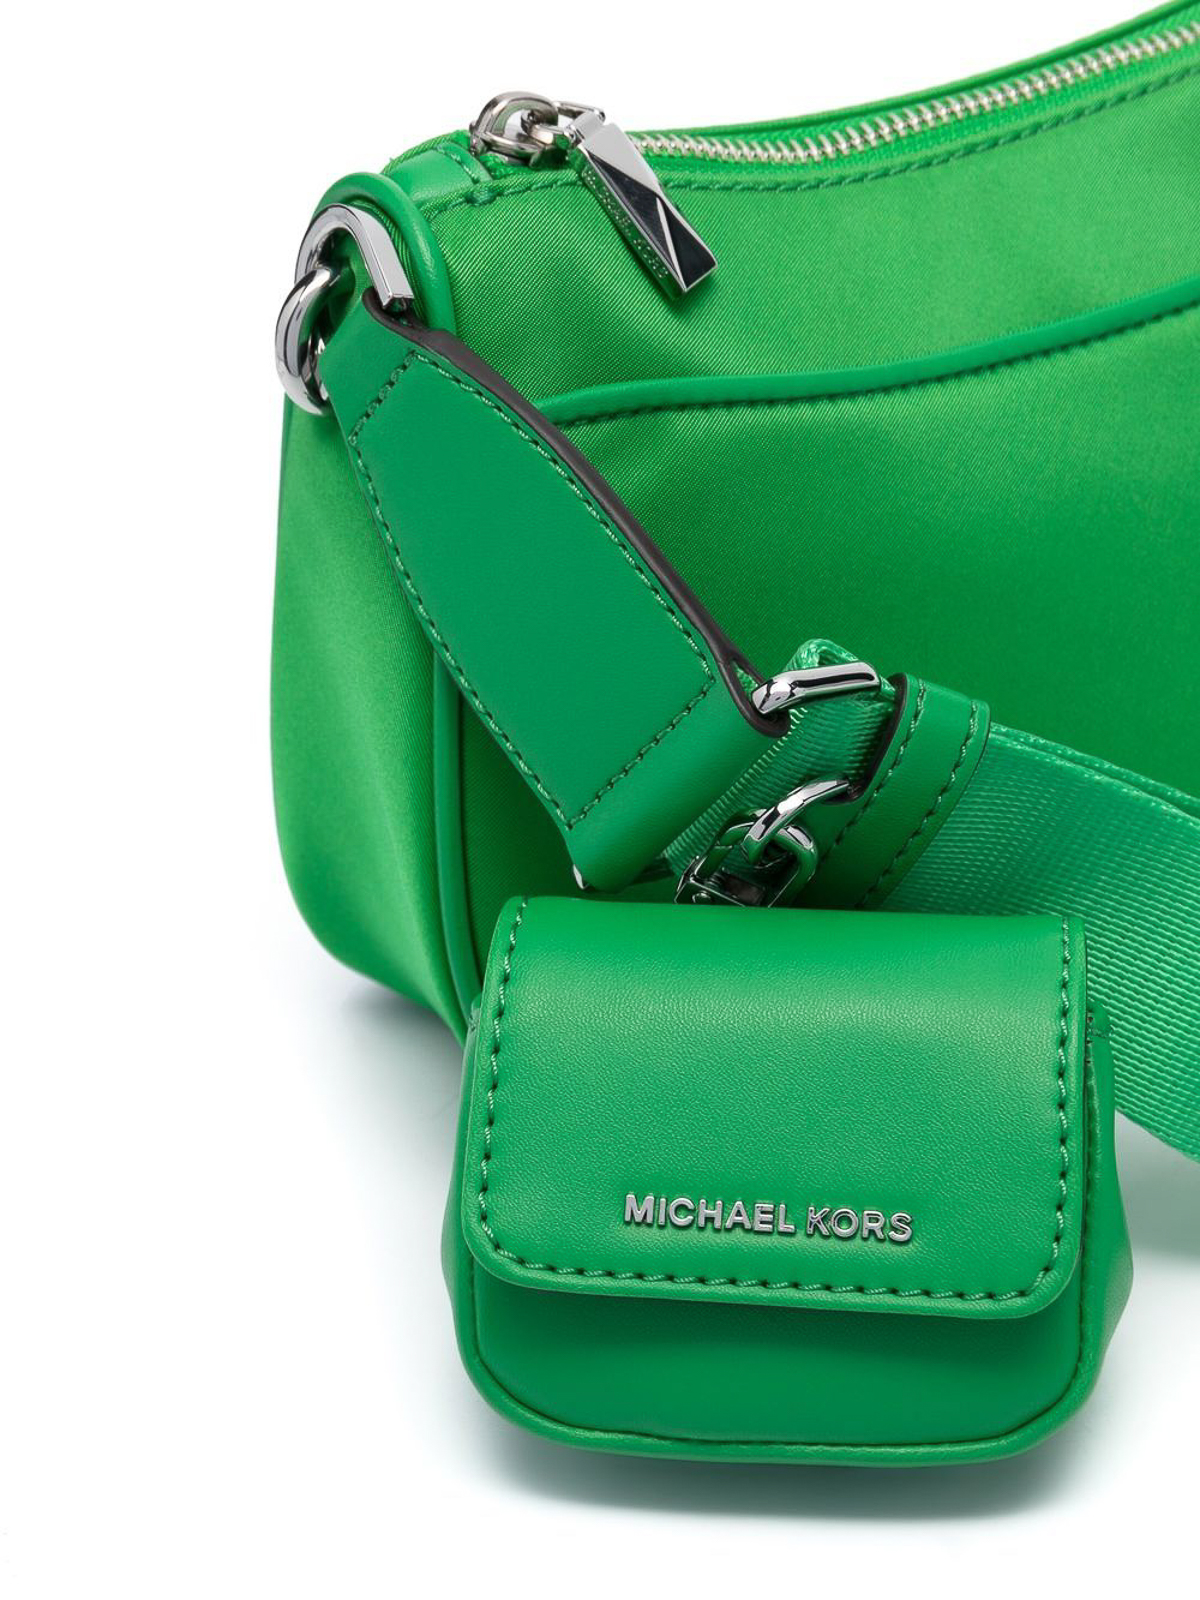 Cross body bags Michael Kors - Jet set bag with detachable coin purse 32R3SJ6C8C322